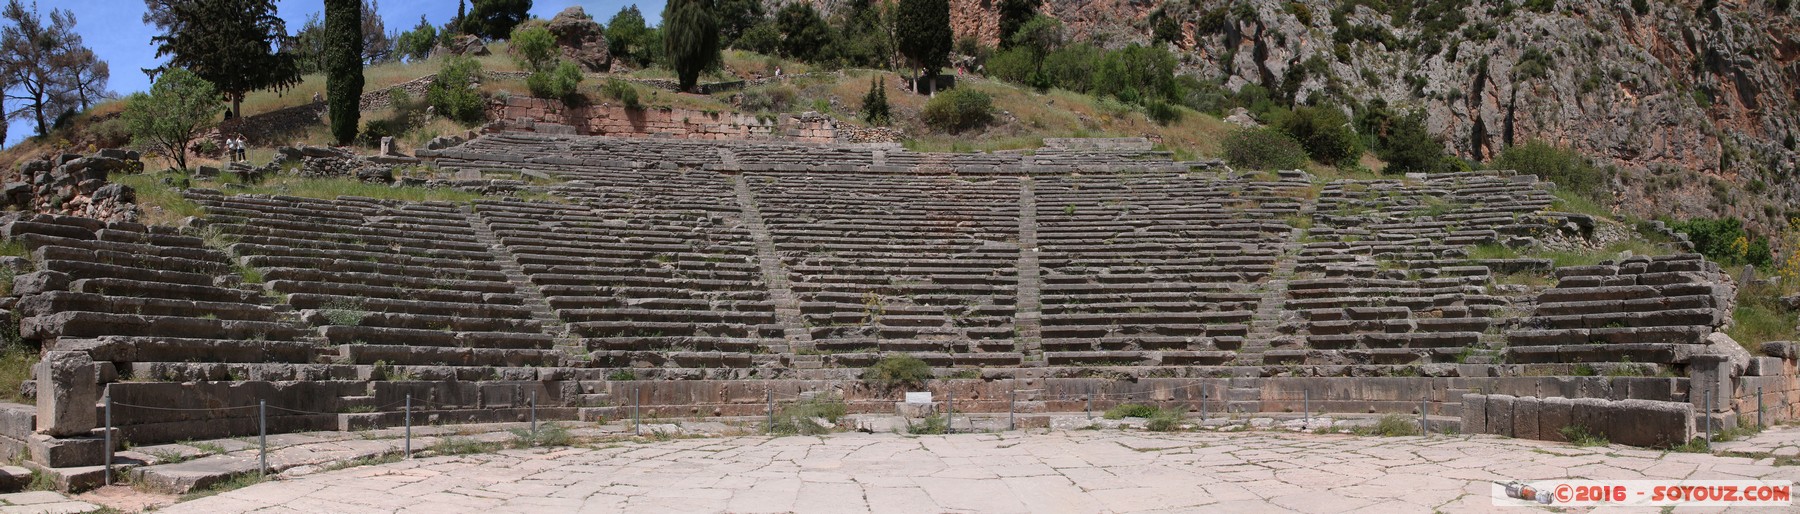 Archaeological site of Delphi - Ancient theatre - panorama
Stitched Panorama
Mots-clés: Delfi Delphi GRC Grèce Delphes Ruines grec patrimoine unesco Phocis Ancient theatre panorama